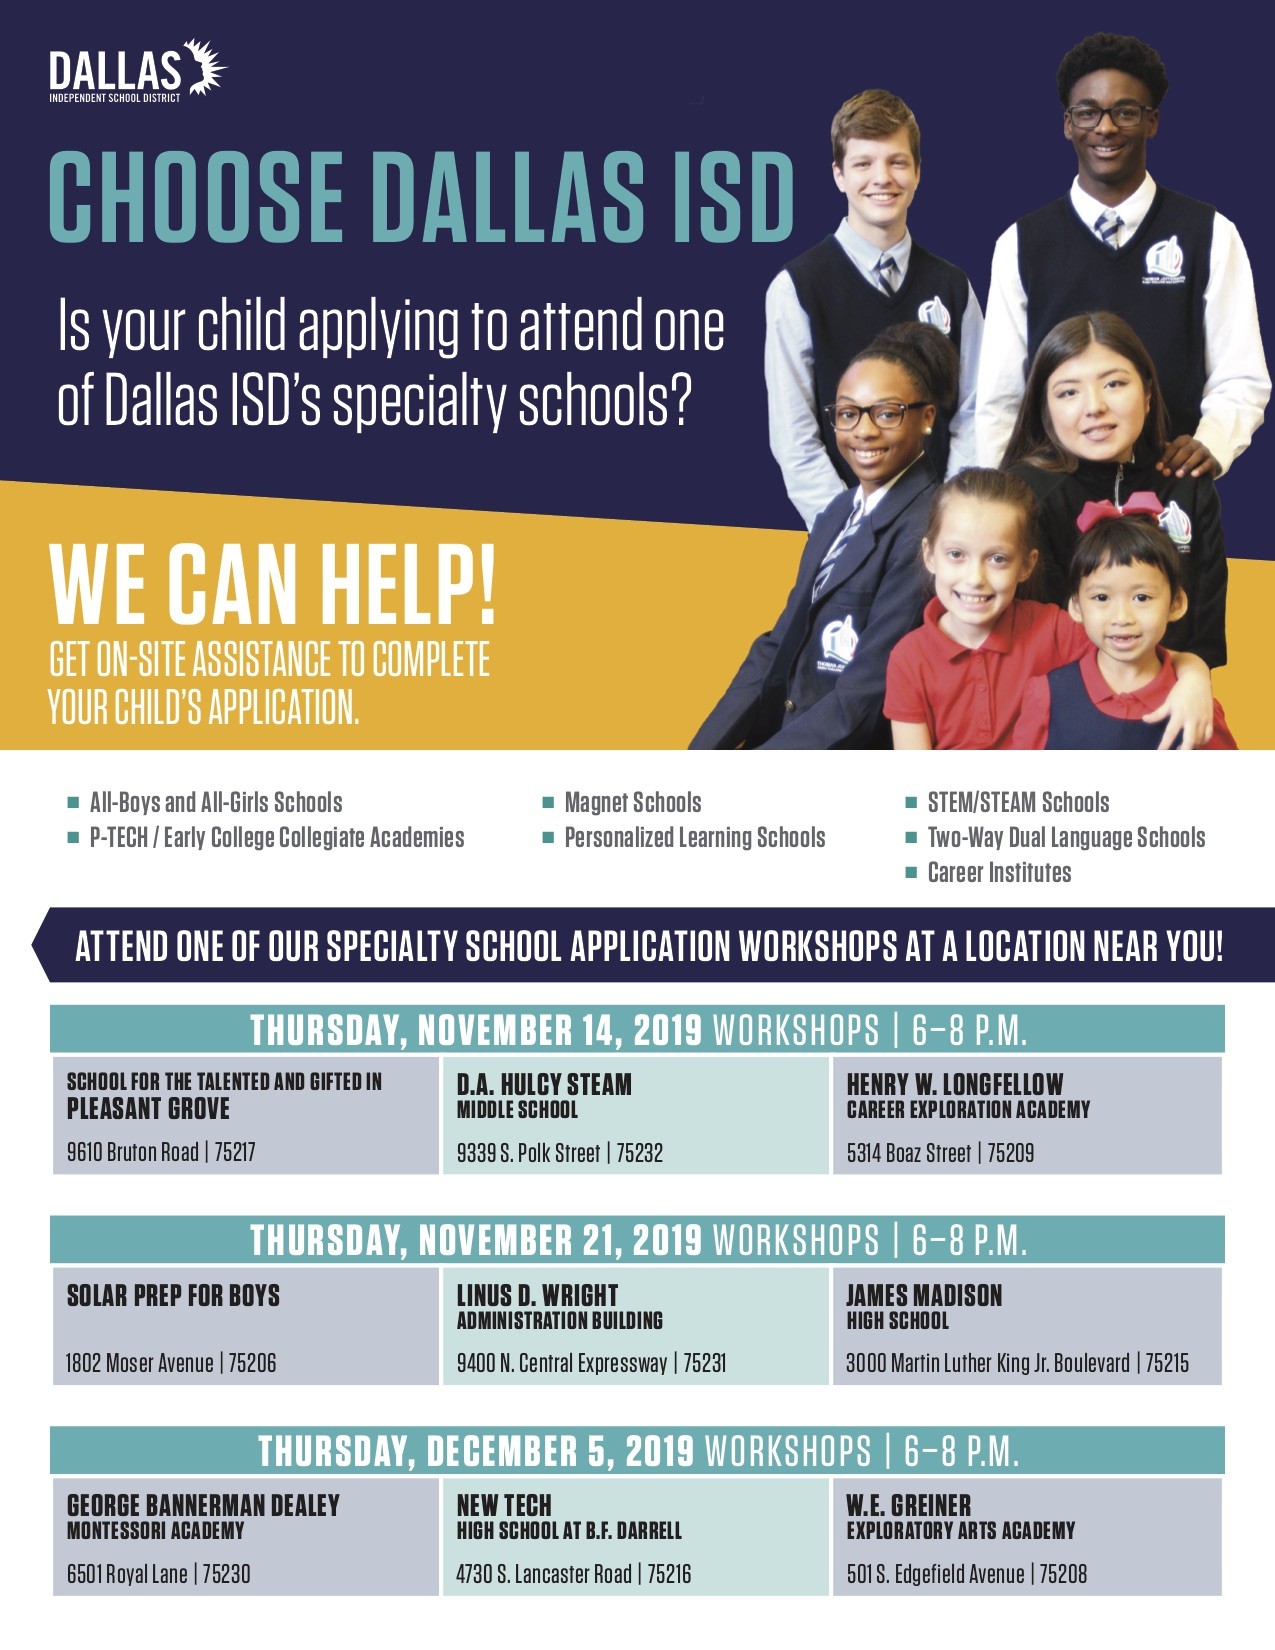 ¿Necesita ayuda para solicitar admisión a escuelas especializadas de Dallas ISD? ¡Cuente con nosotros!